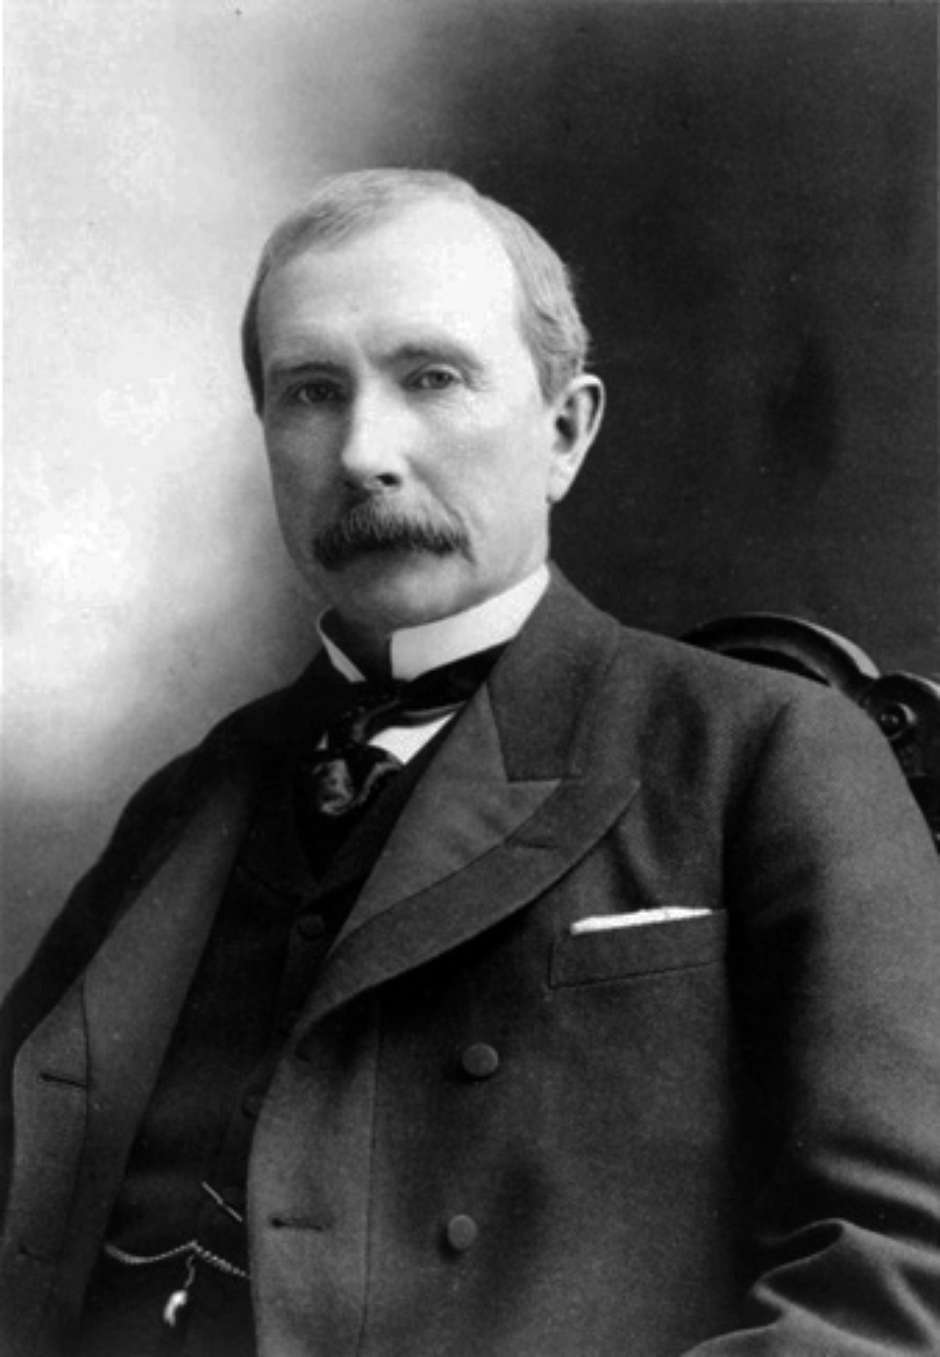 John D Rockefeller e Samuel Andrews, um fabricante de velas, viram o futuro  no refinamento de petróleo a partir de poços